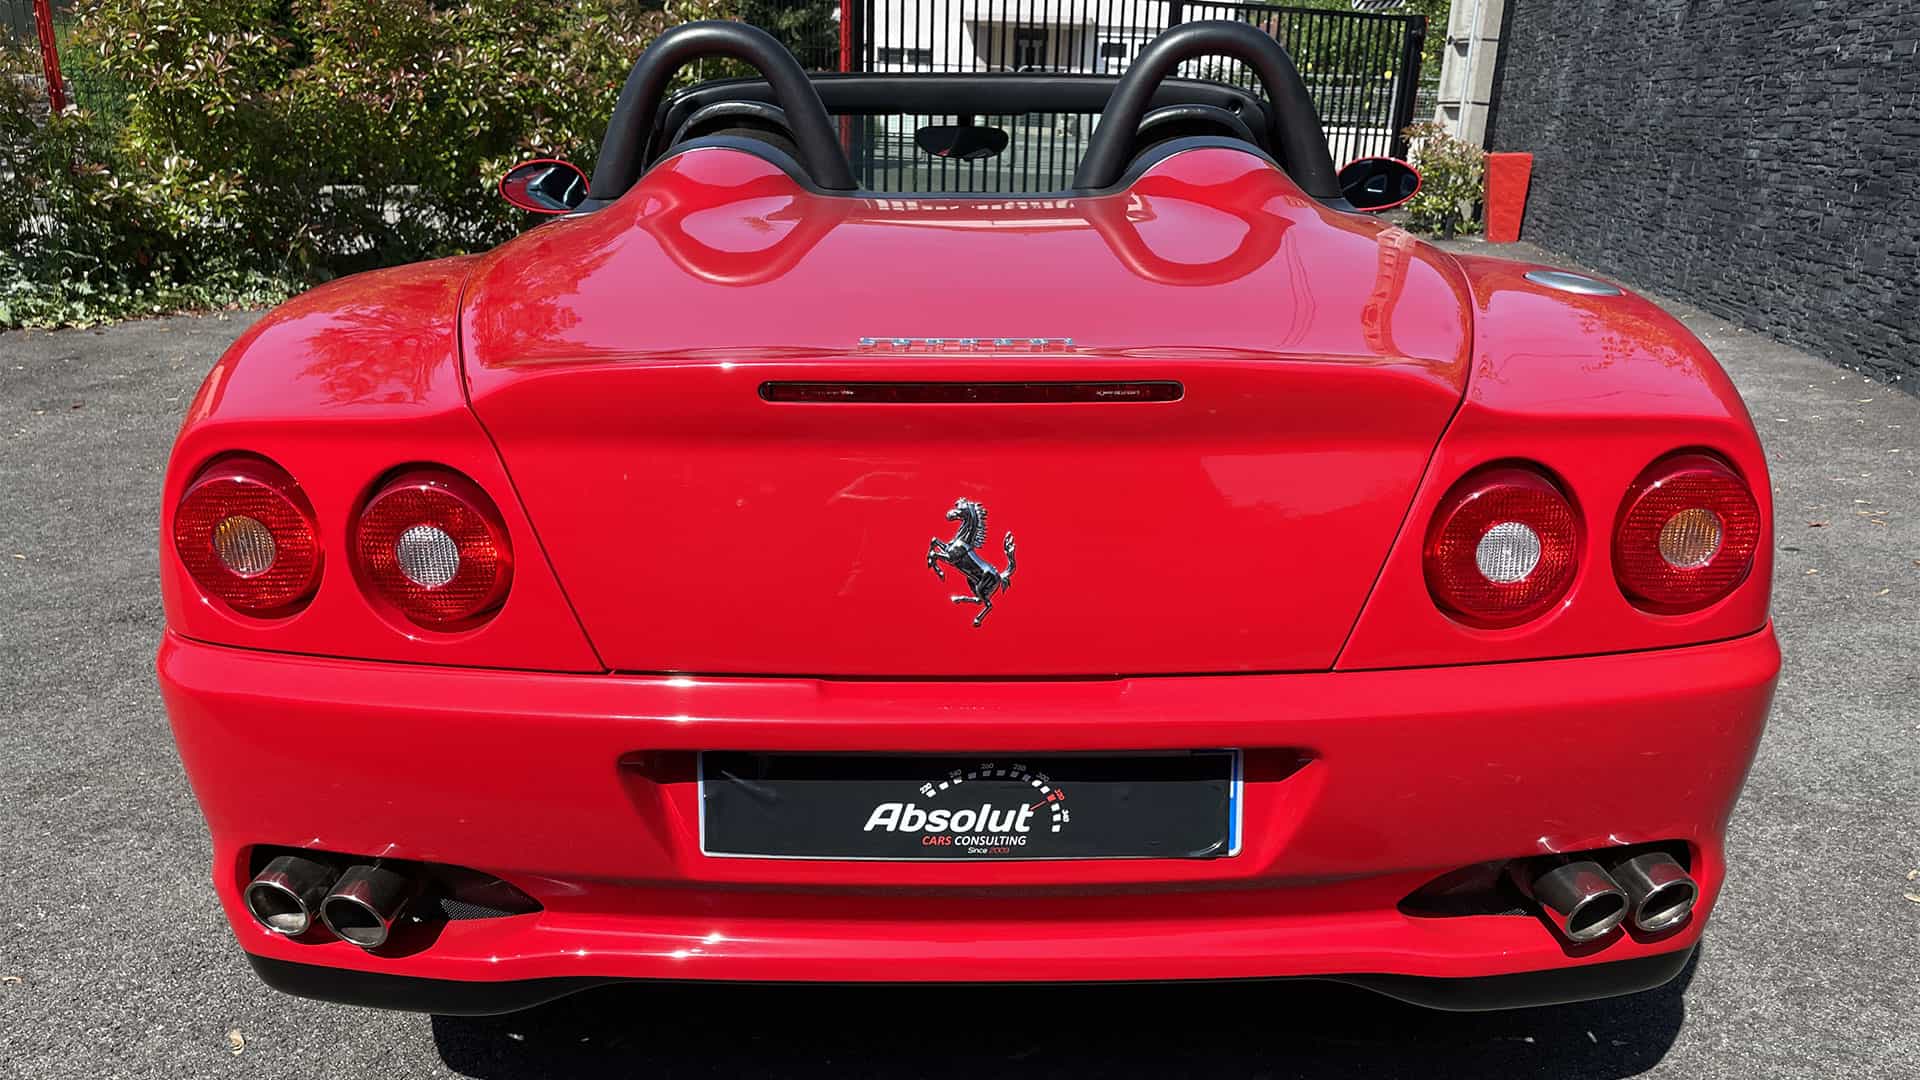 Rear view of Ferrari 550 Barchetta